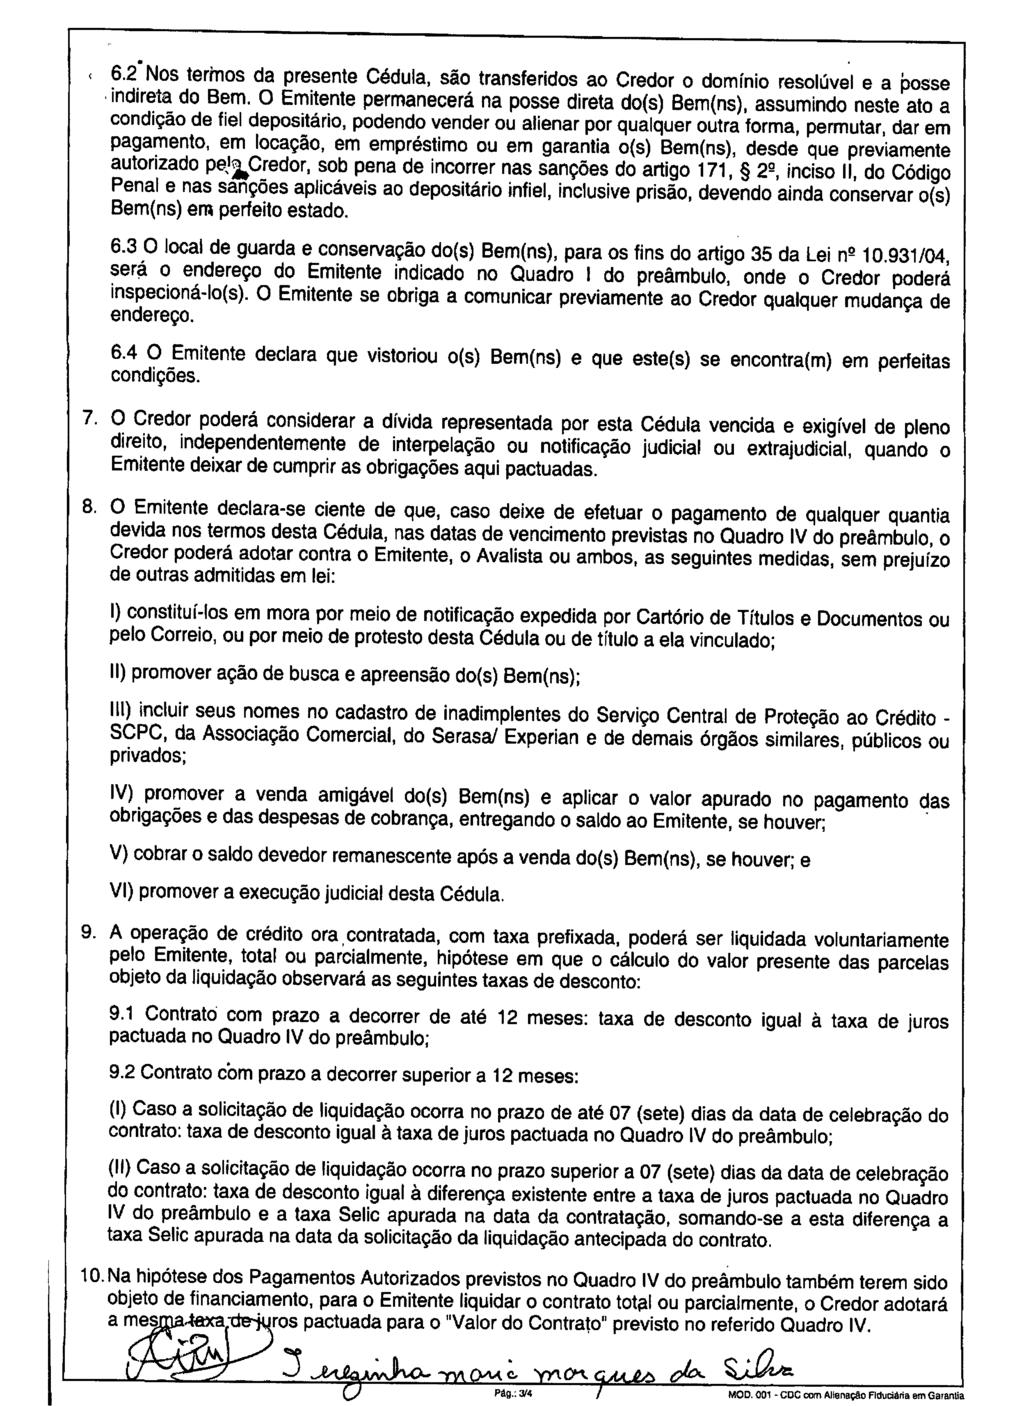 fls. 50 Este documento é cópia do original, assinado digitalmente por MARCOS ANTONIO AVILA, liberado nos autos em 10/05/2016 às 17:08.